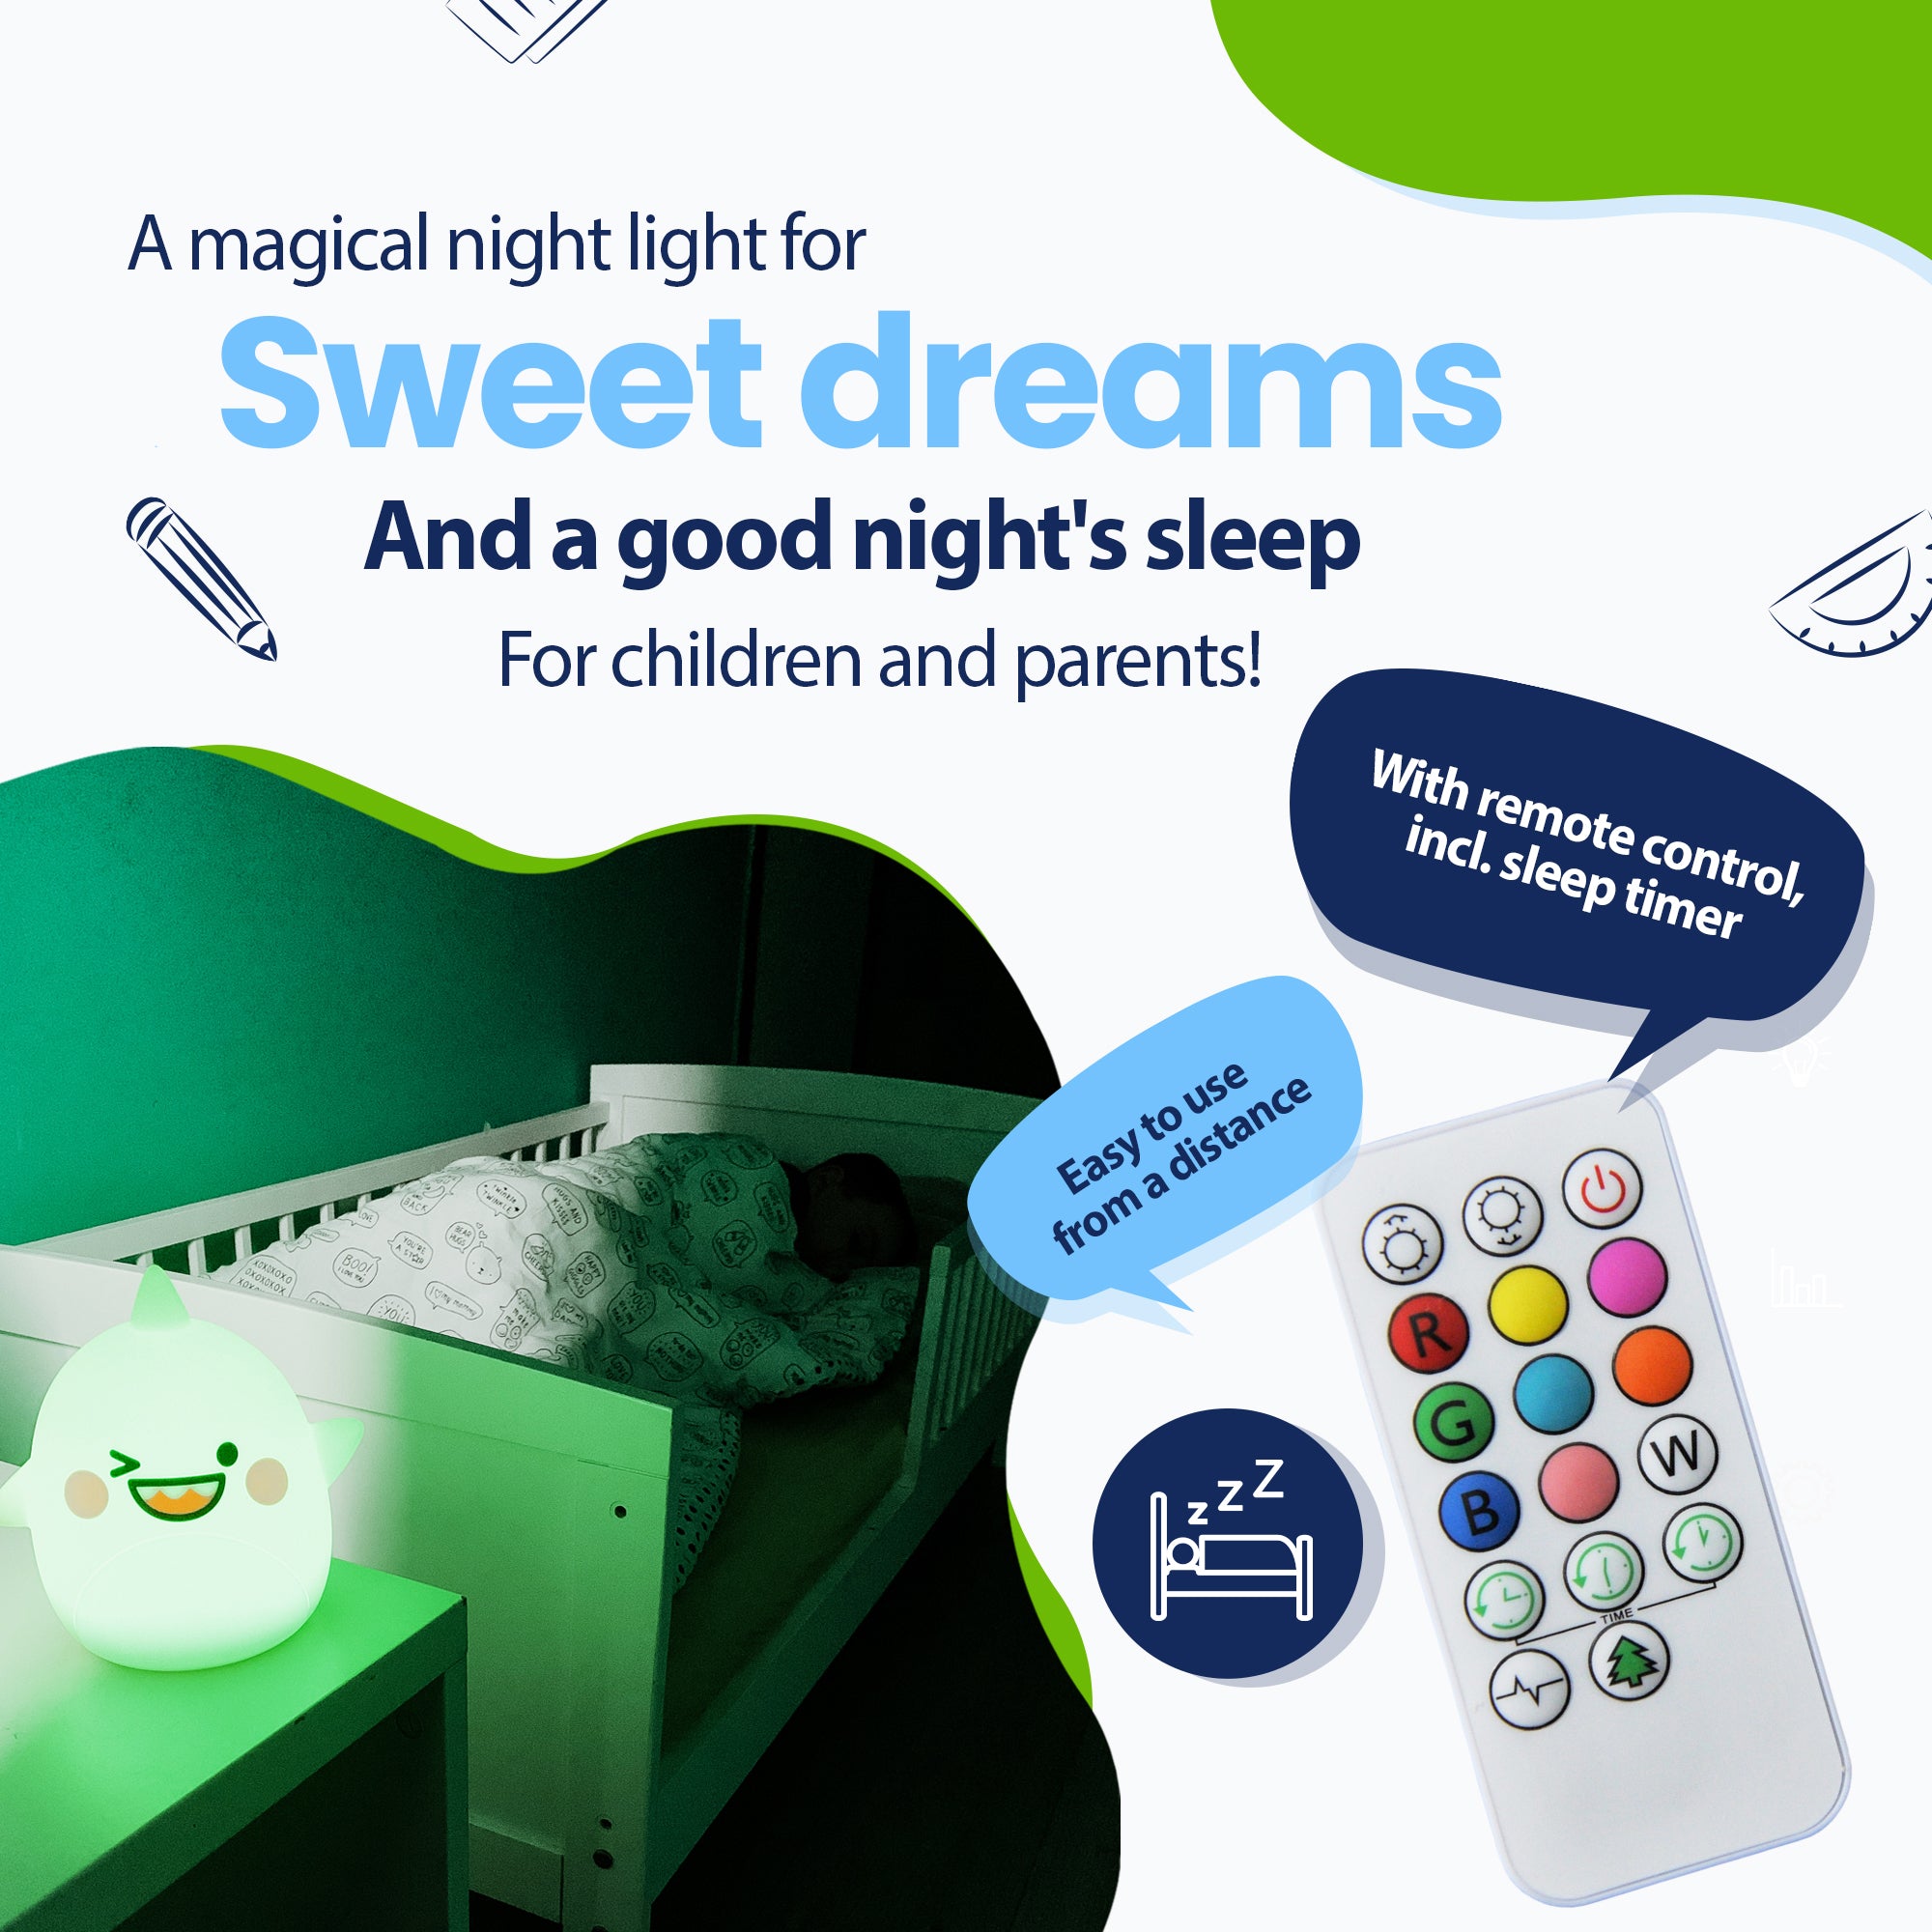 Et magisk natlys til søde drømme og en sund nattesøvn for børn og forældre - med fjernbetjening inklusive sleep-timer - nemt på afstand